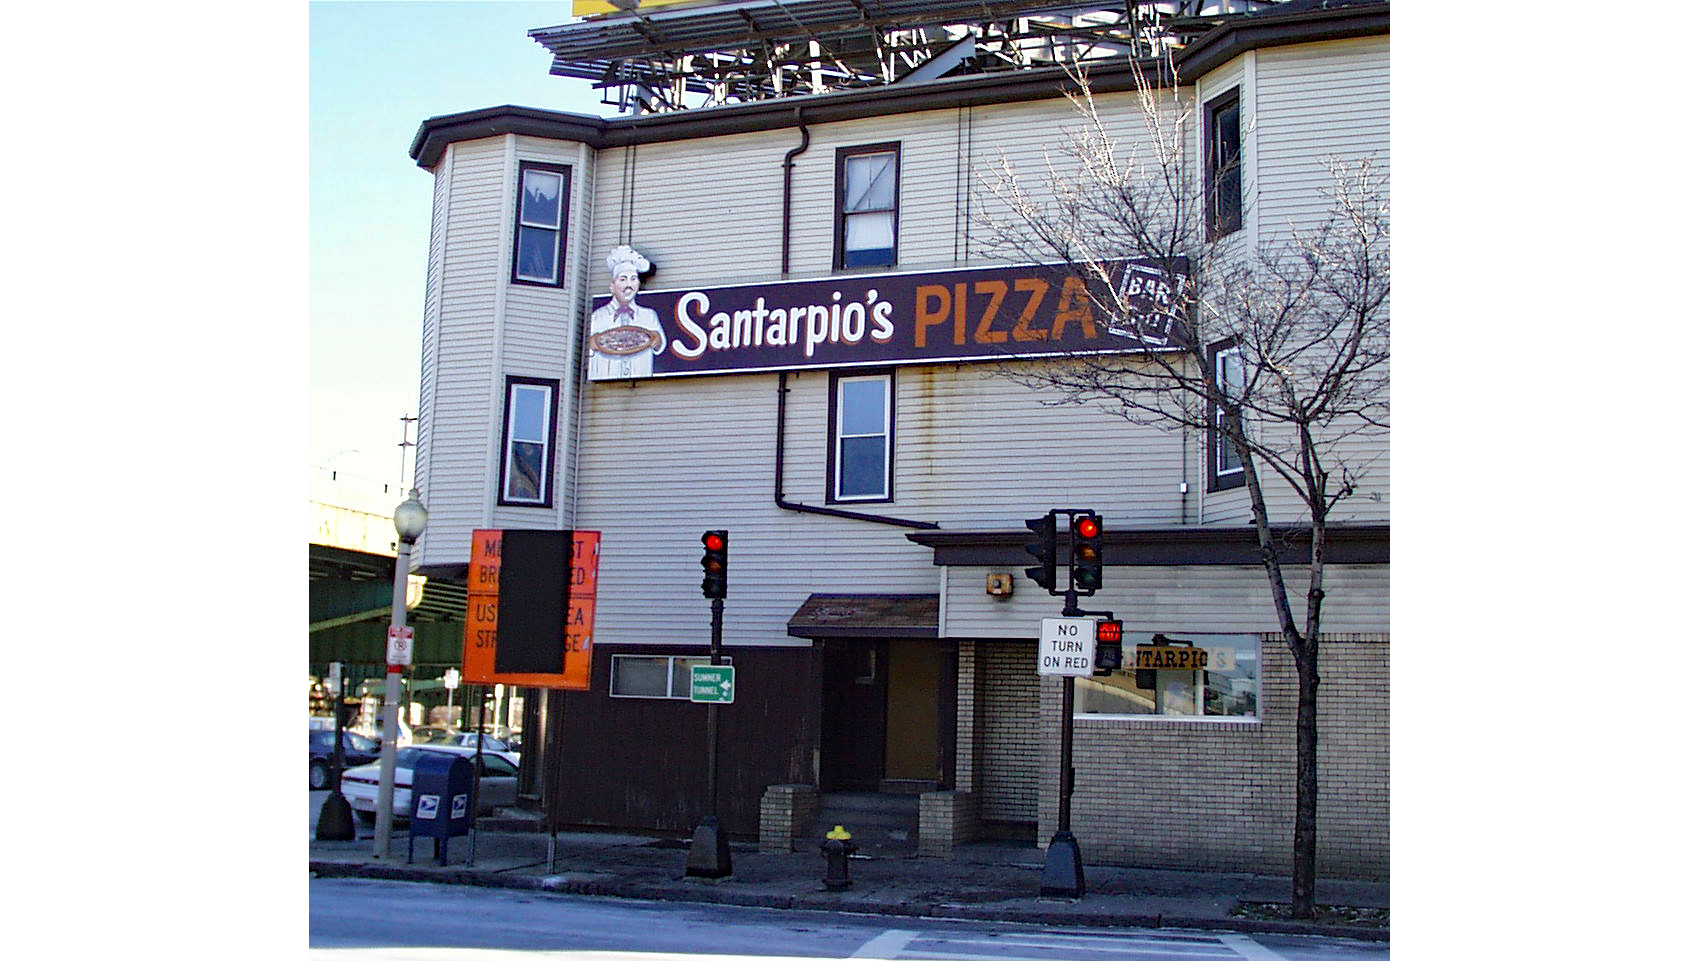 The exterior of Santarpio's Pizza